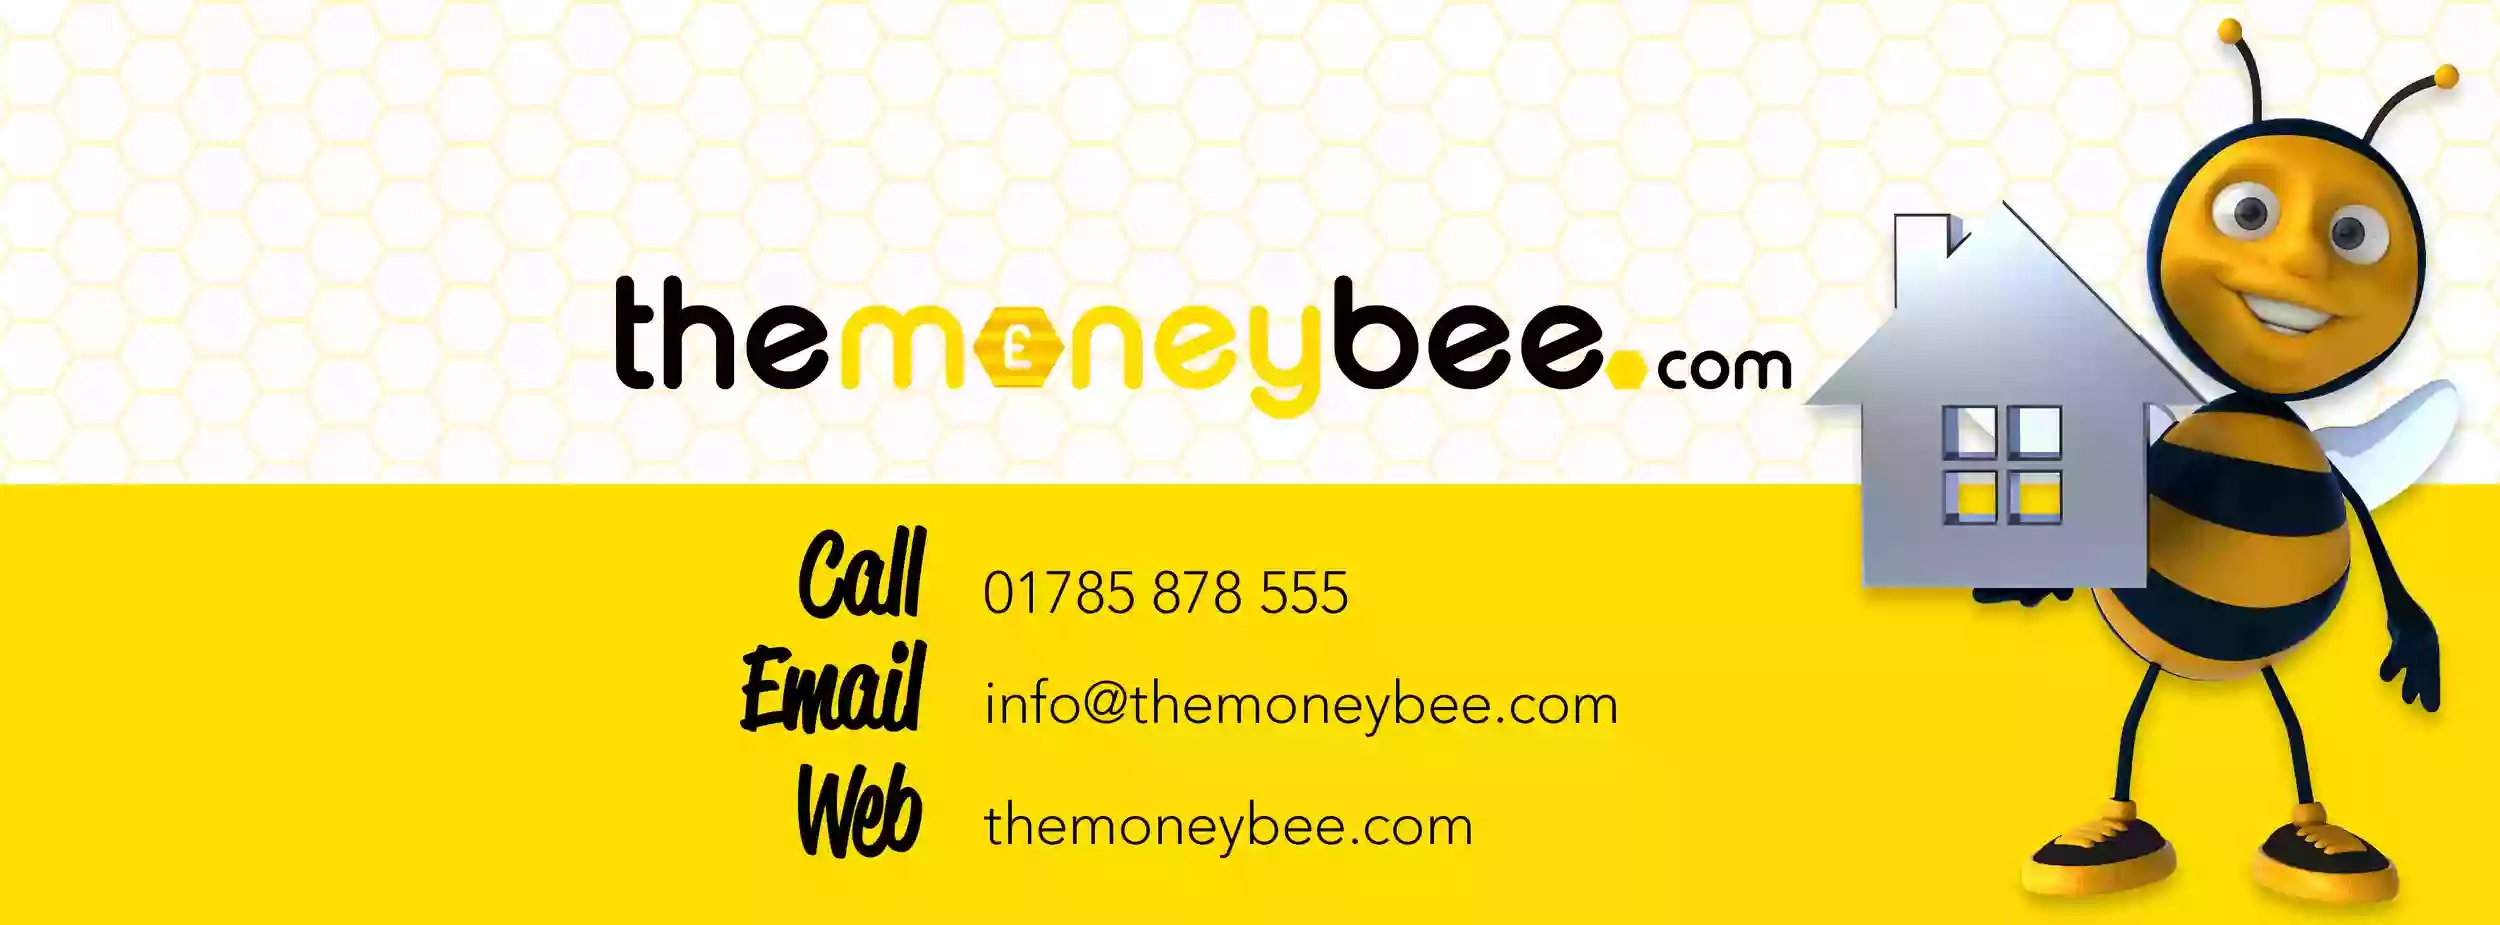 The Money Bee